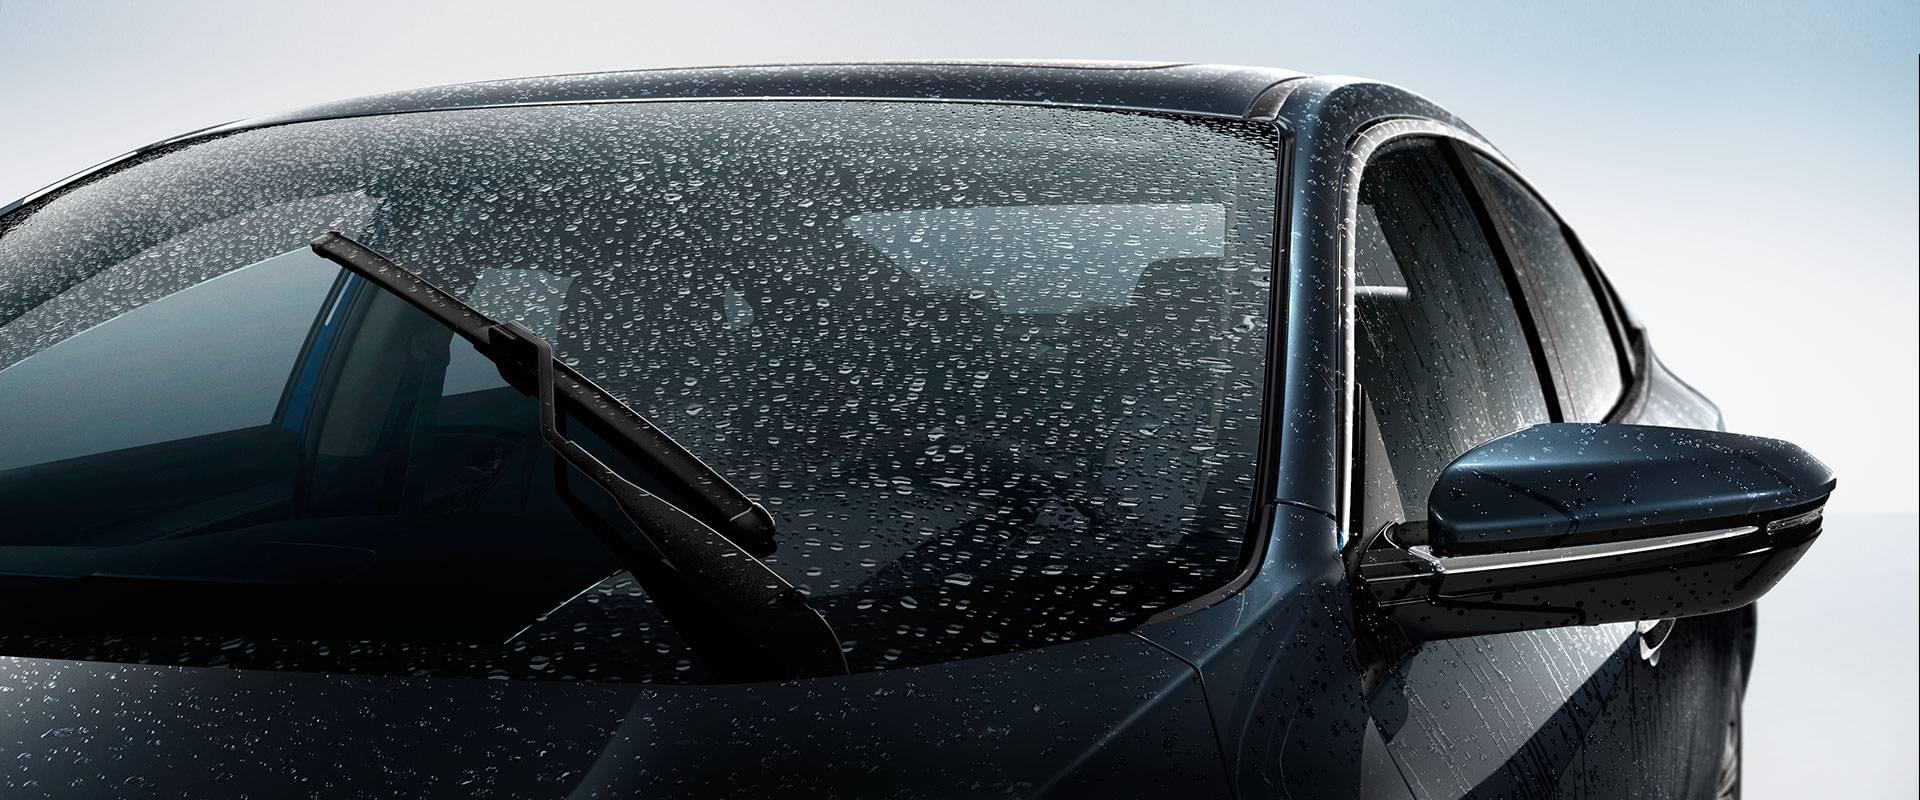 جهان نما - شیشه - اتومبیل - winshield - windshield-replacement